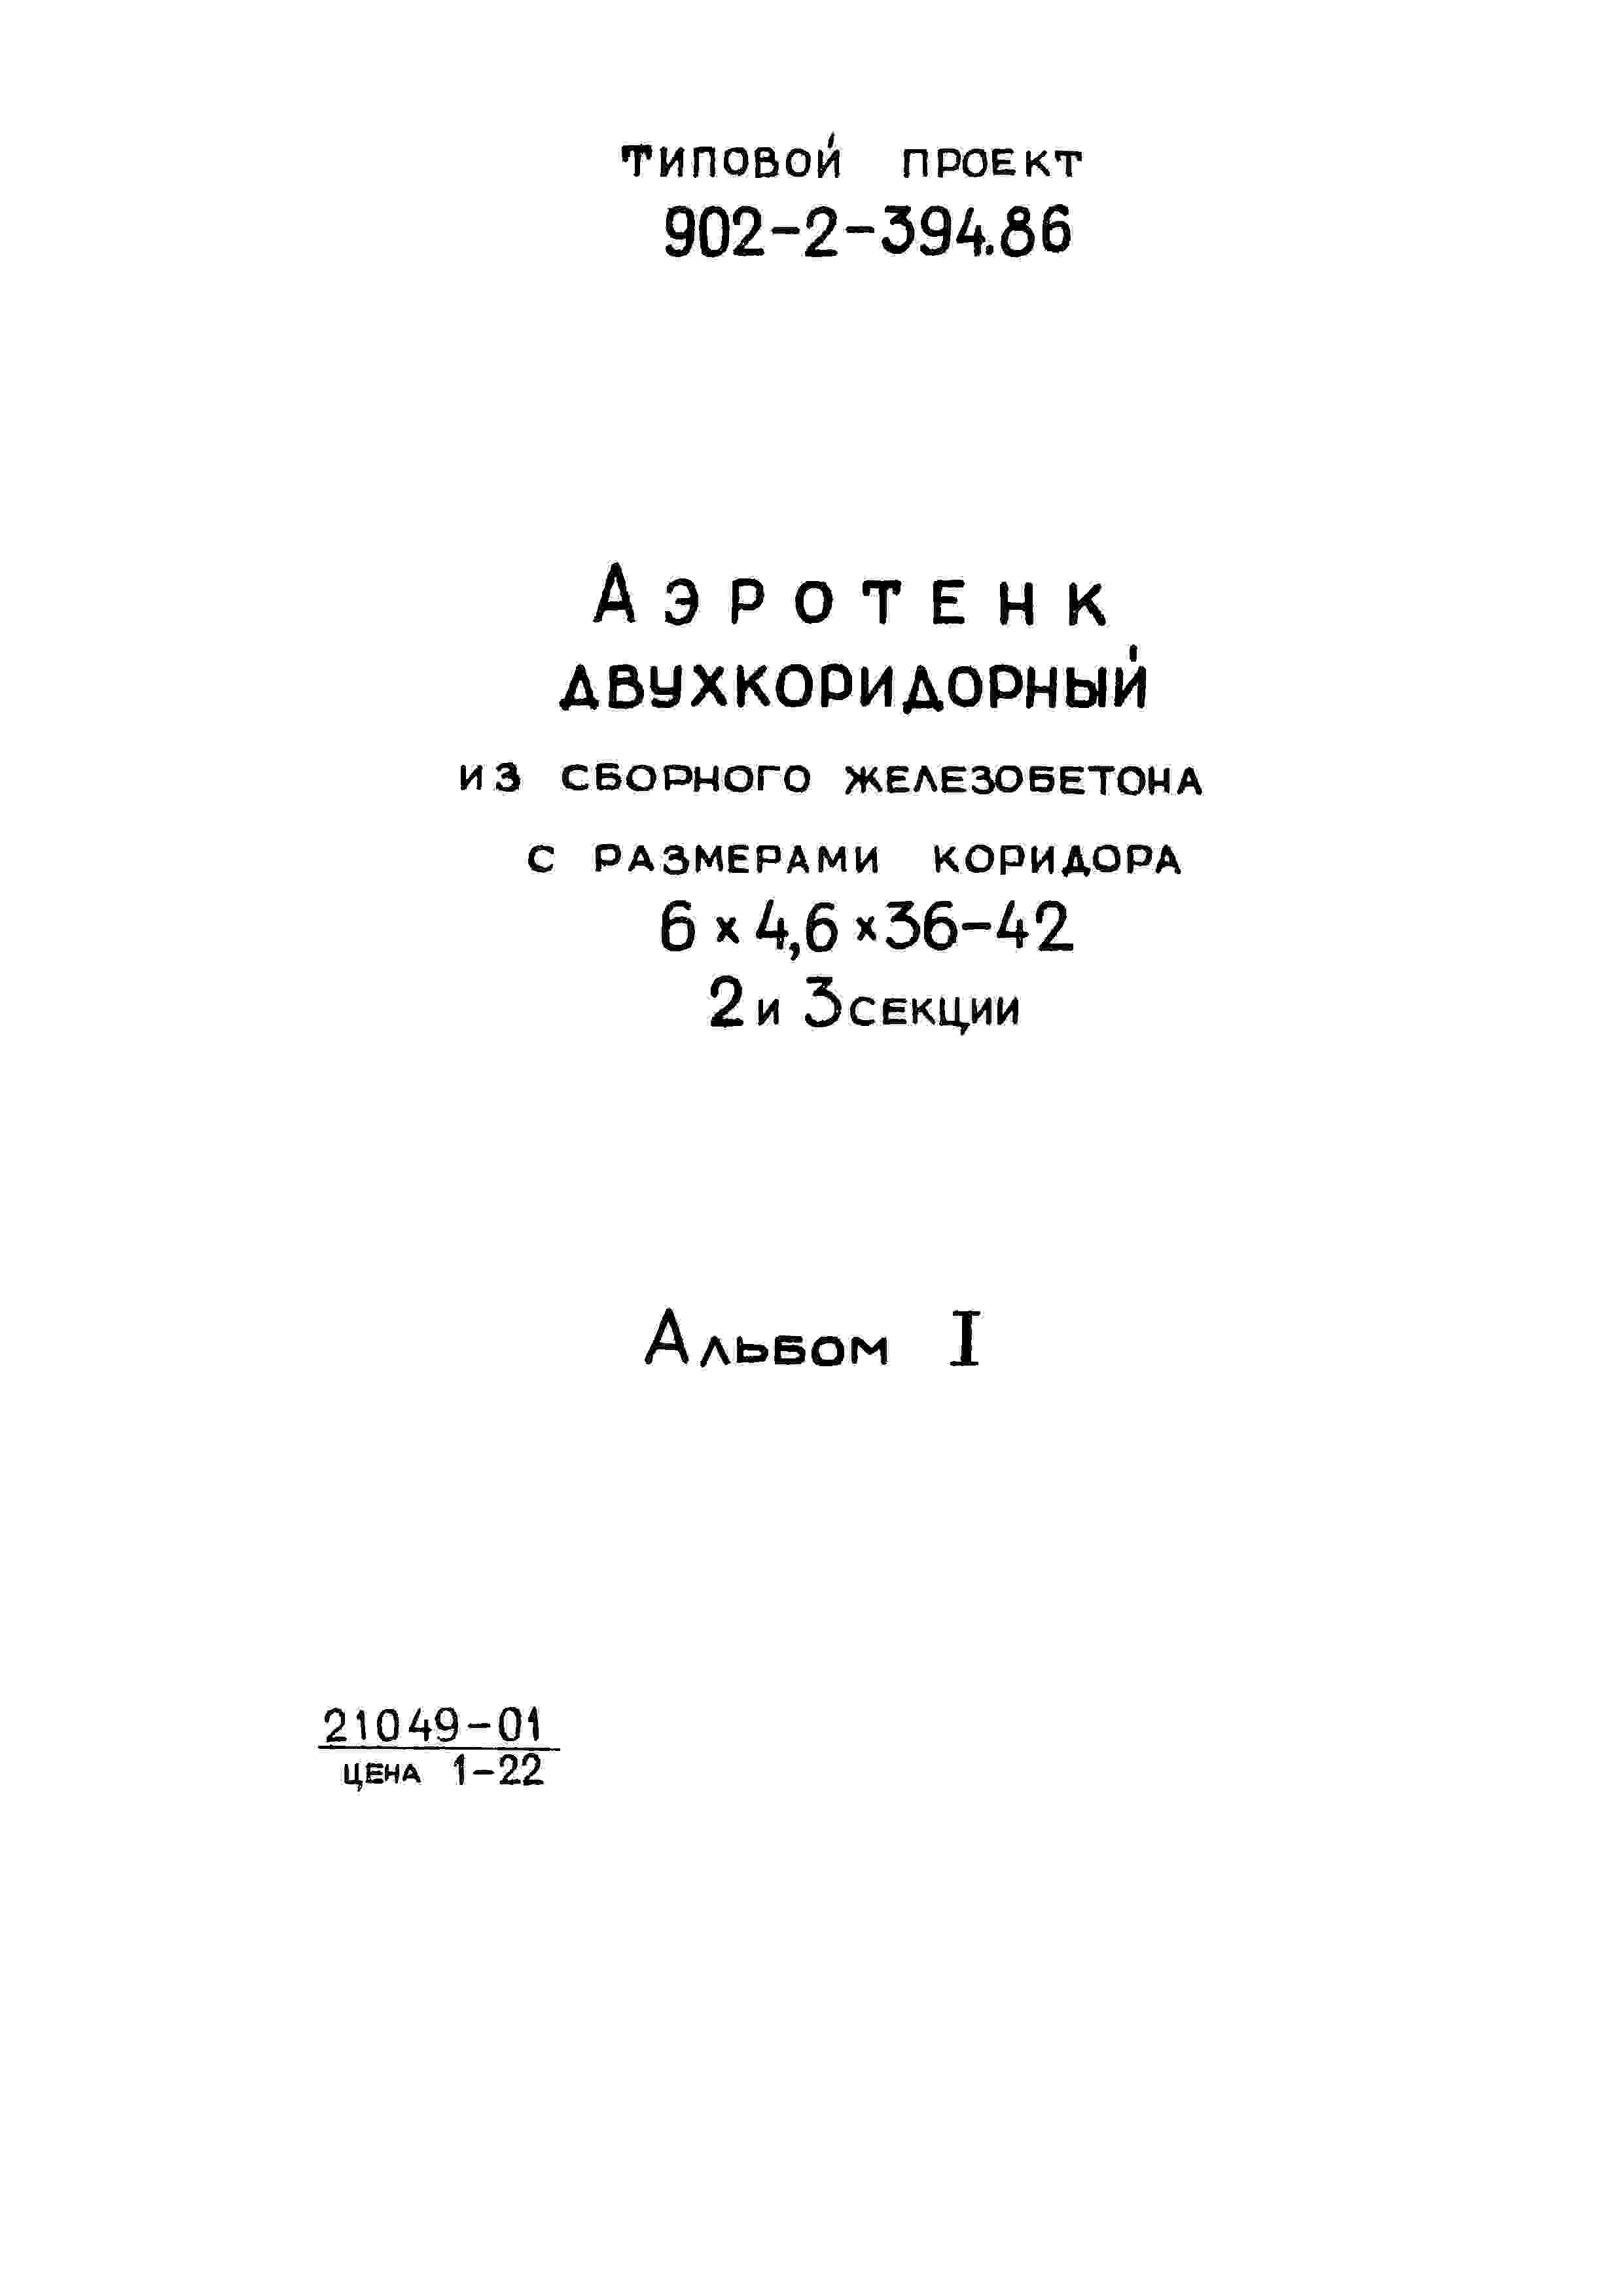 Альбом 1 Пояснительная записка (из тип.пр. 902-2-394.86)    